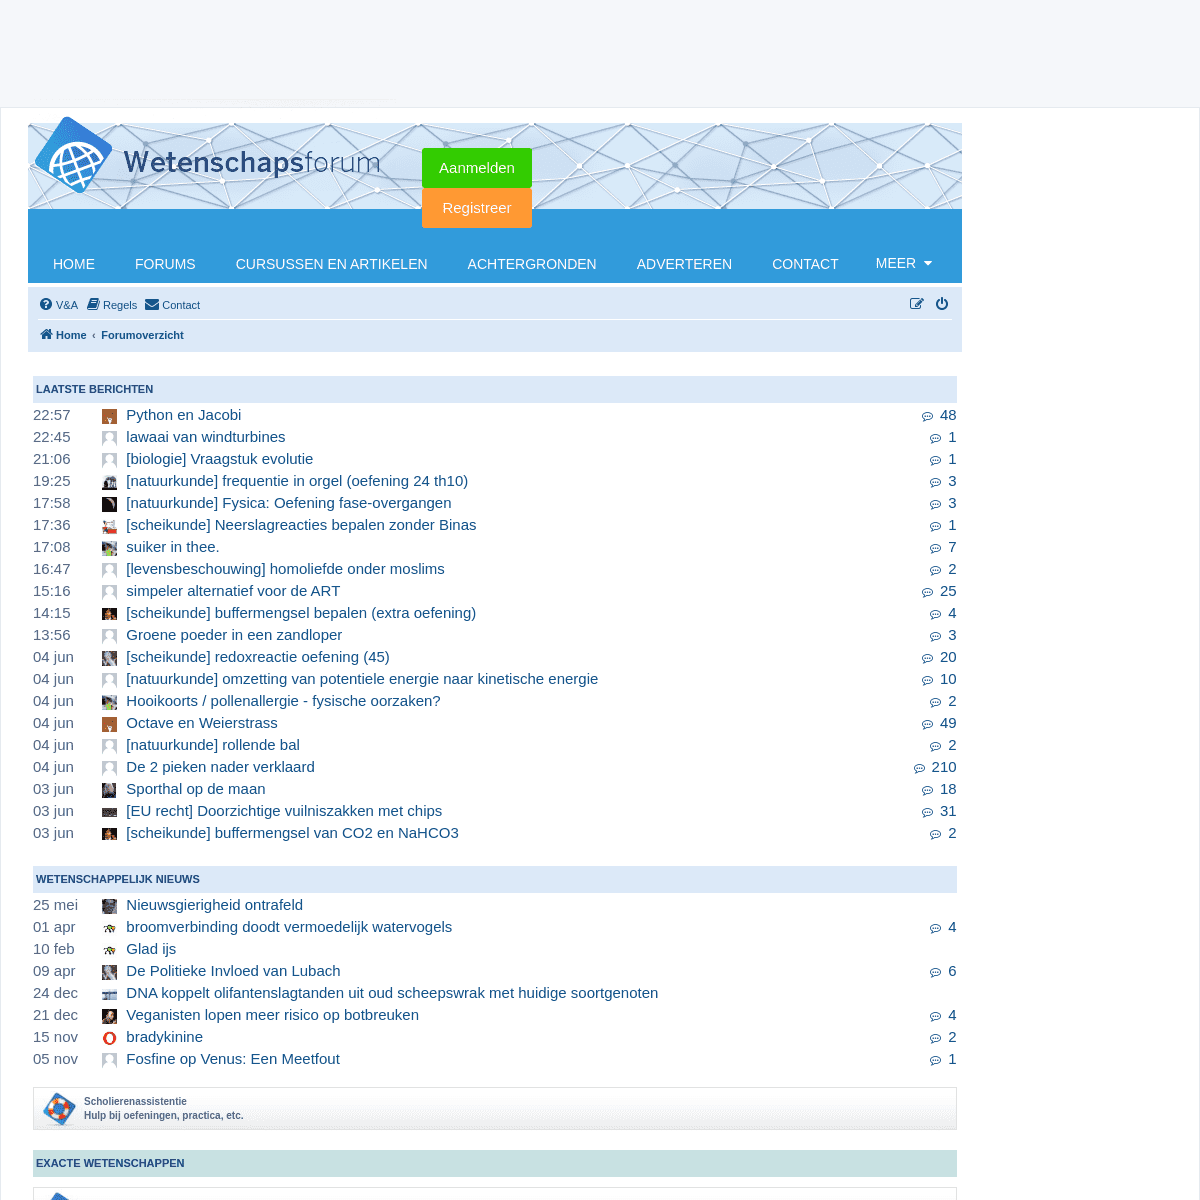 A complete backup of https://wetenschapsforum.nl